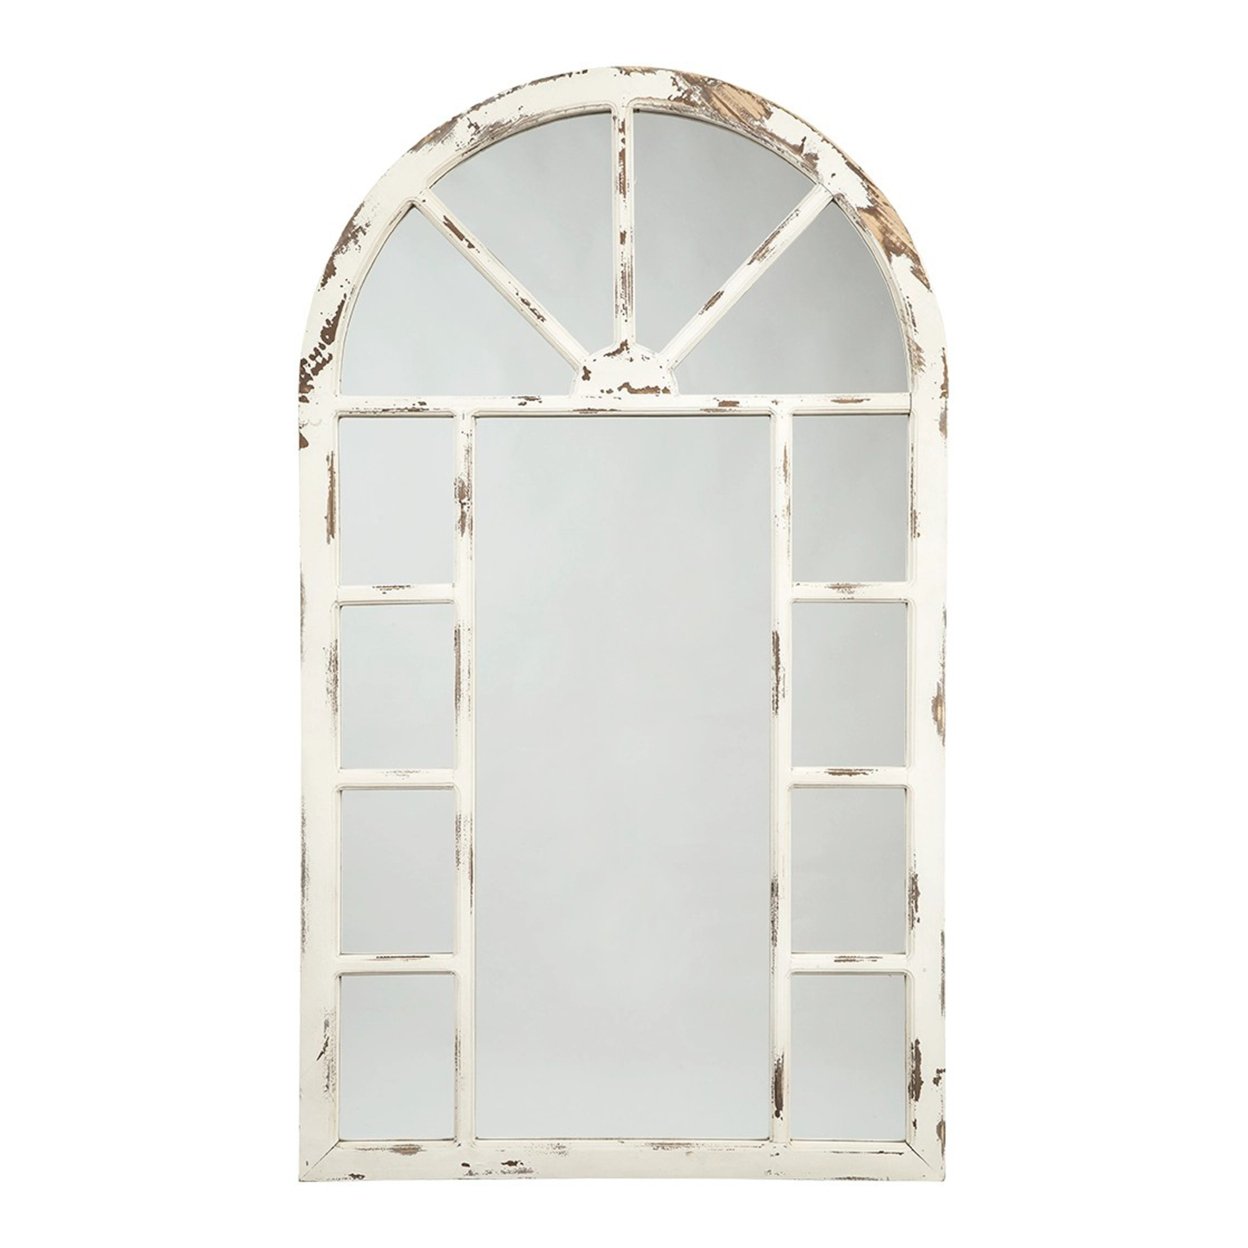 Wooden Window Pane Design Accent Mirror, Antique White- Saltoro Sherpi